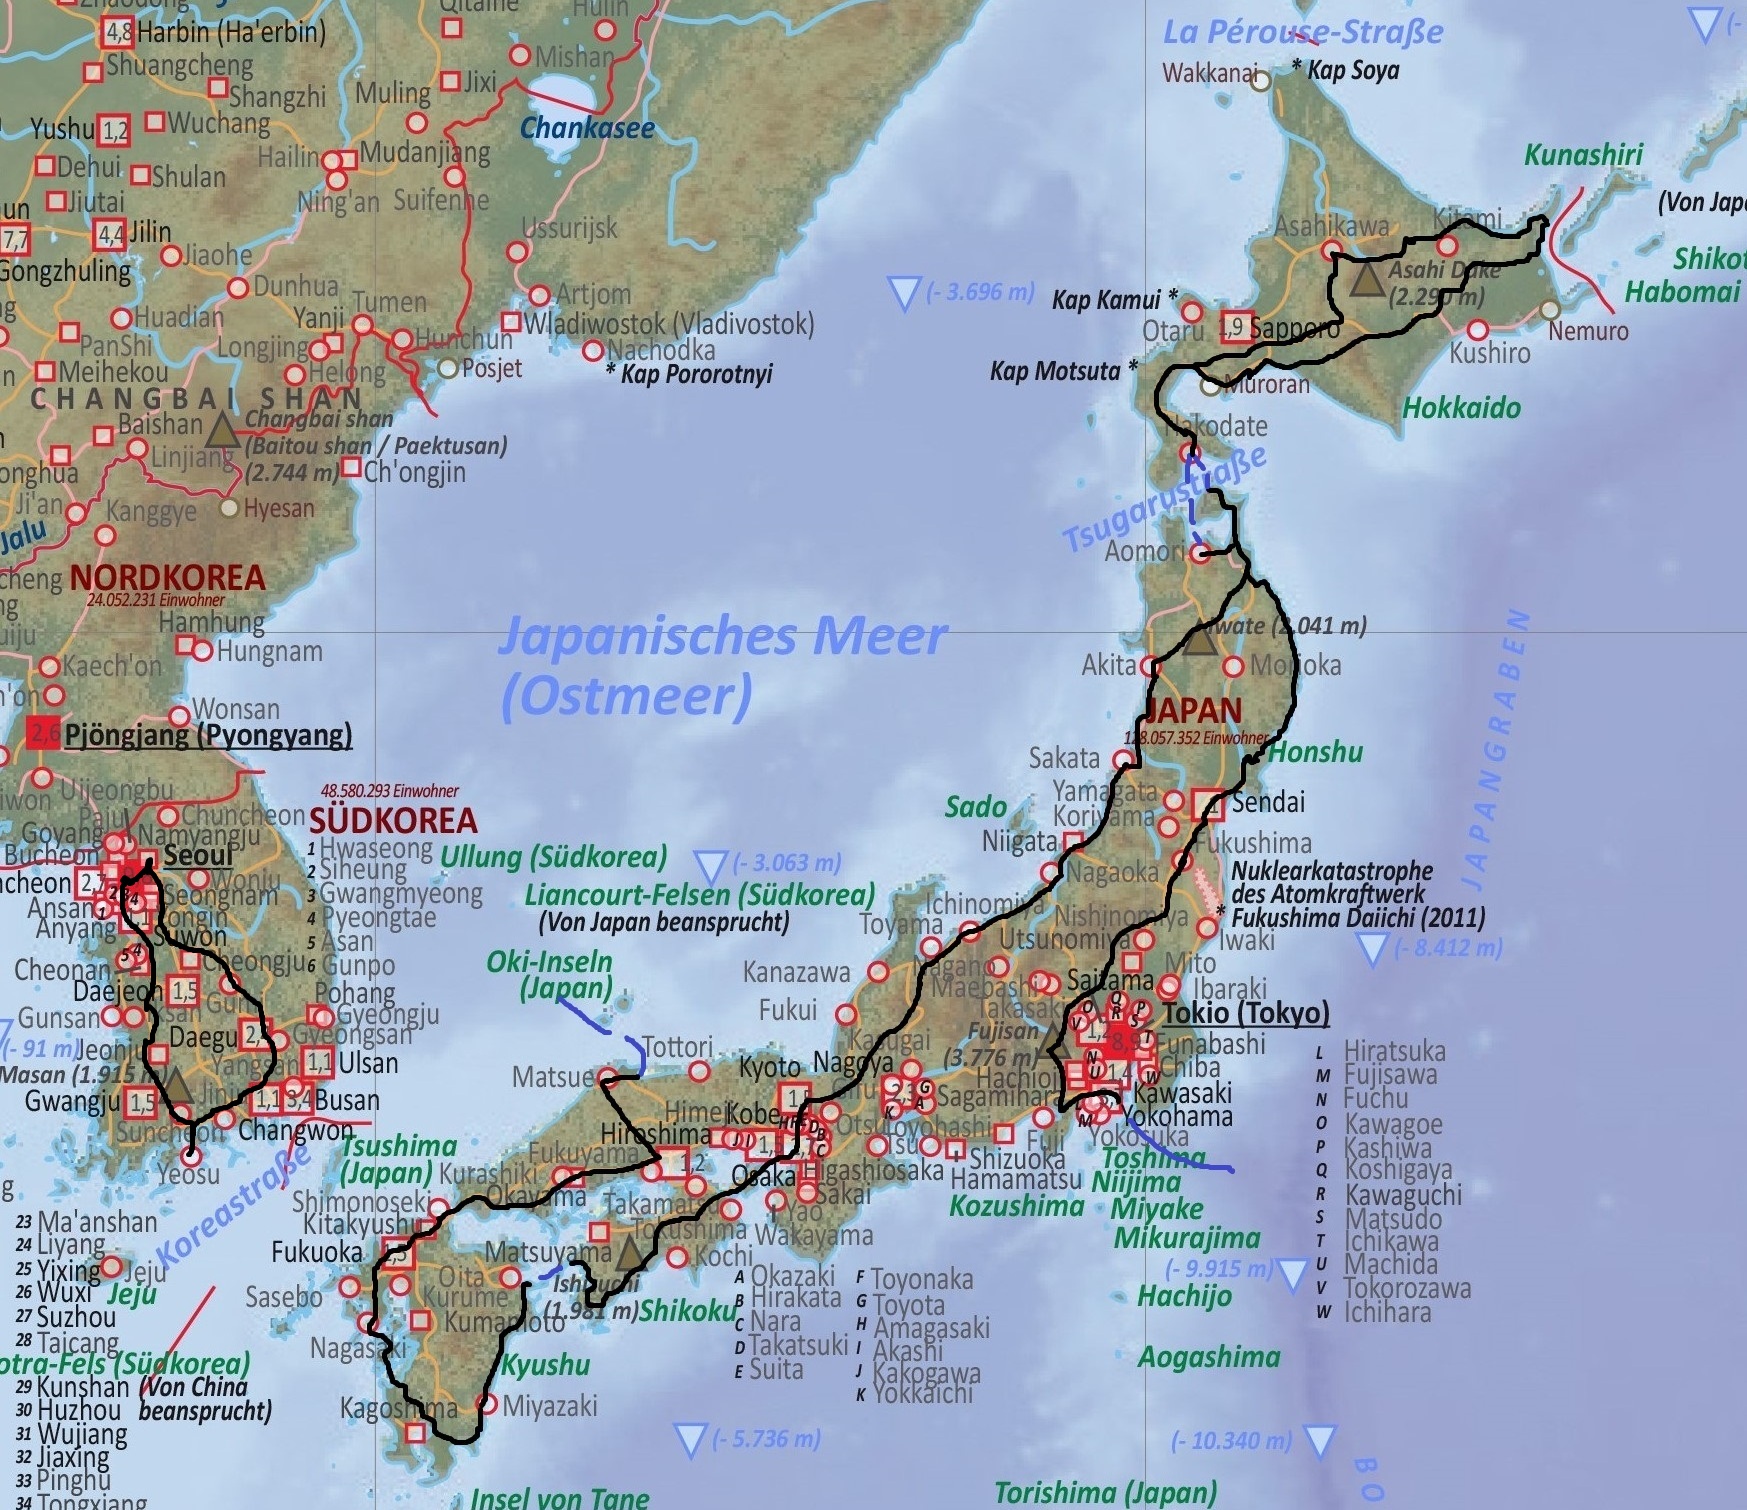 Japan_Route.jpg